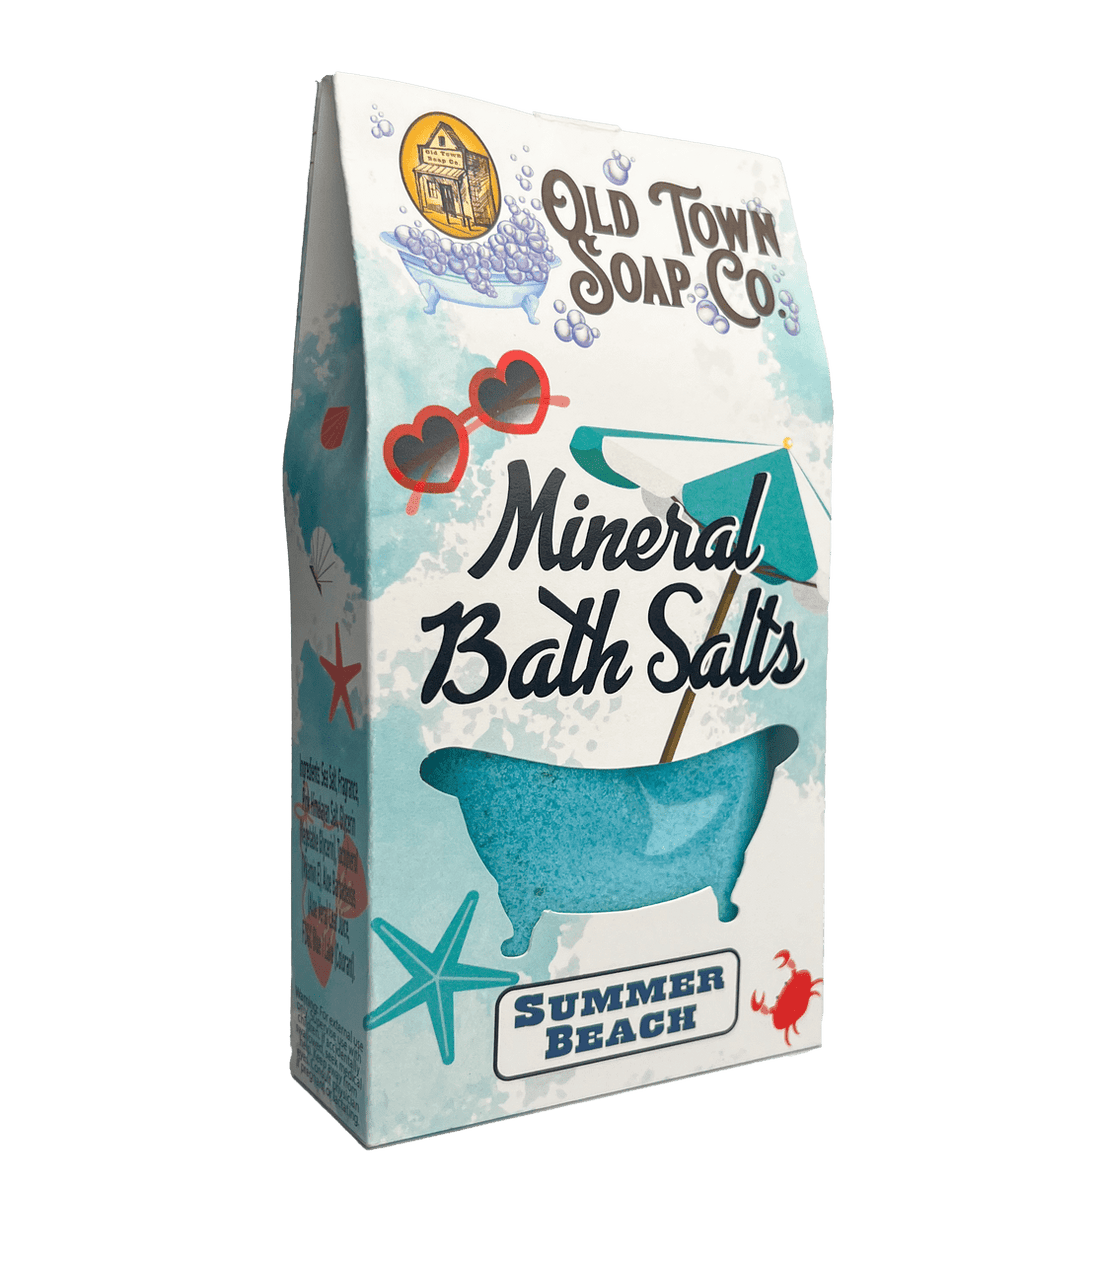 Summer Beach Bath Salts - Old Town Soap Co.